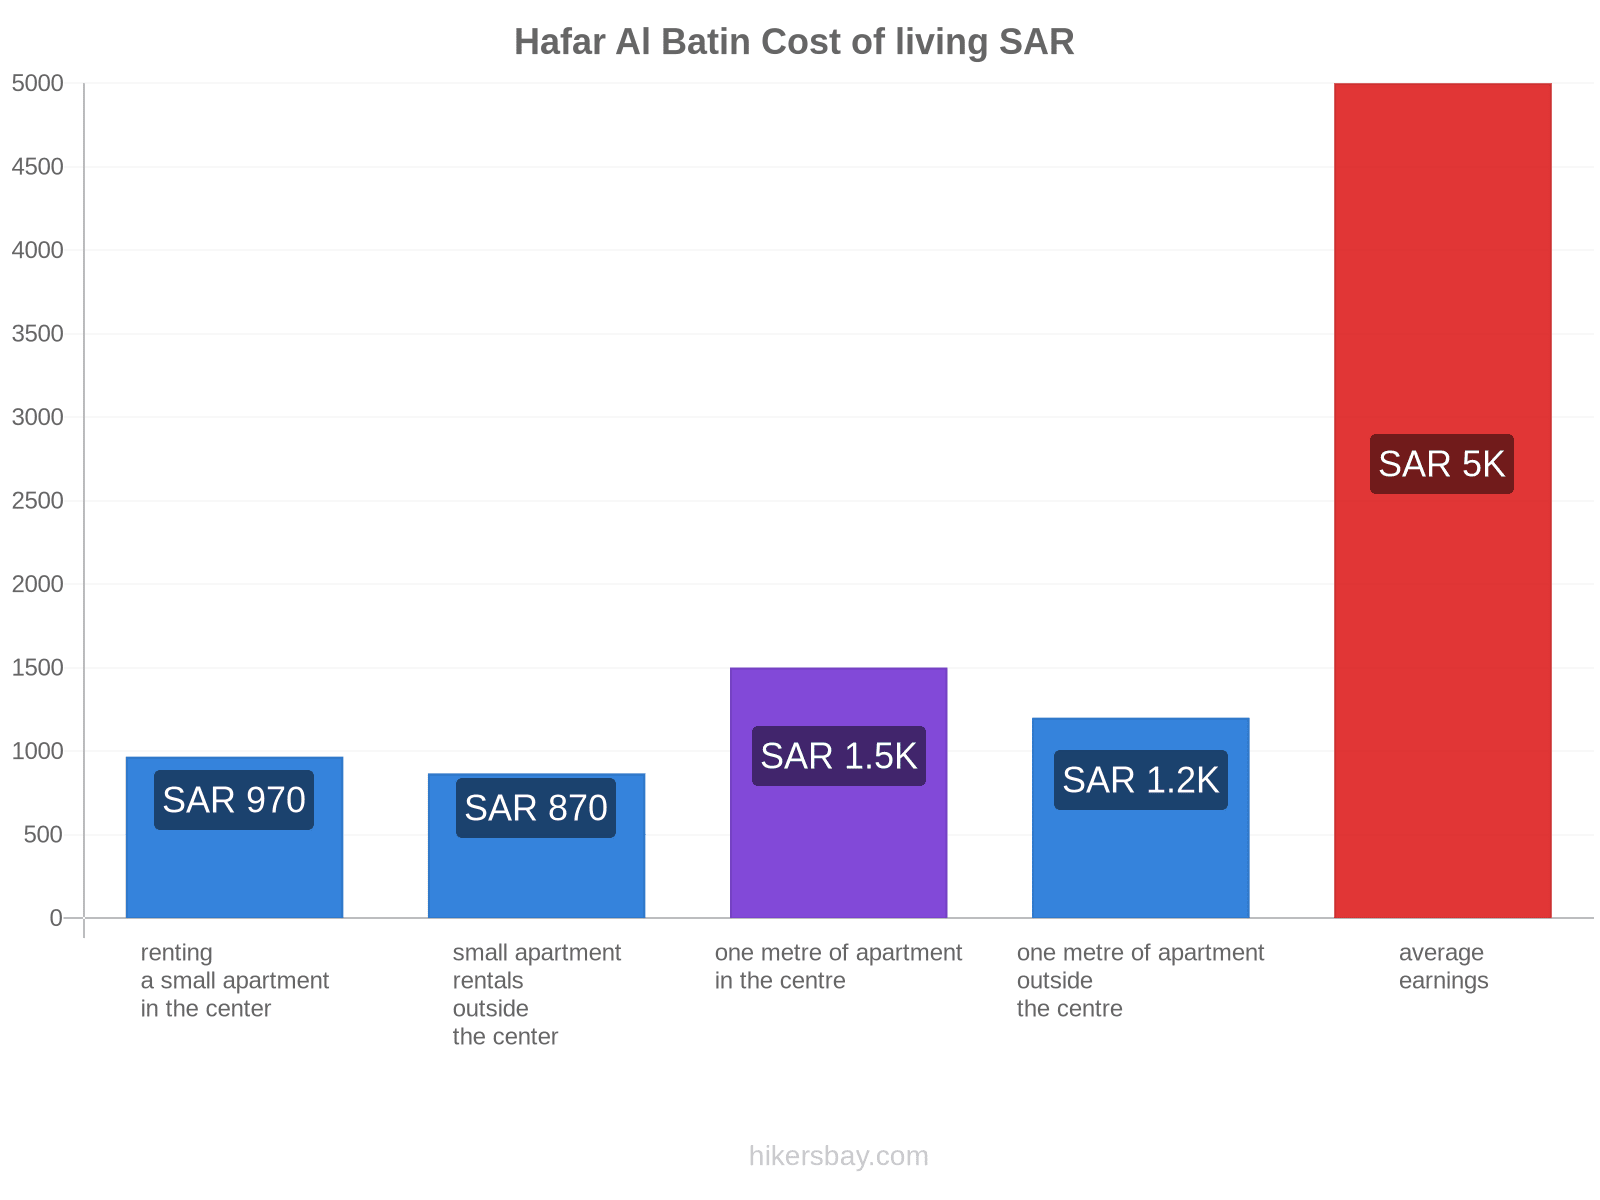 Hafar Al Batin cost of living hikersbay.com